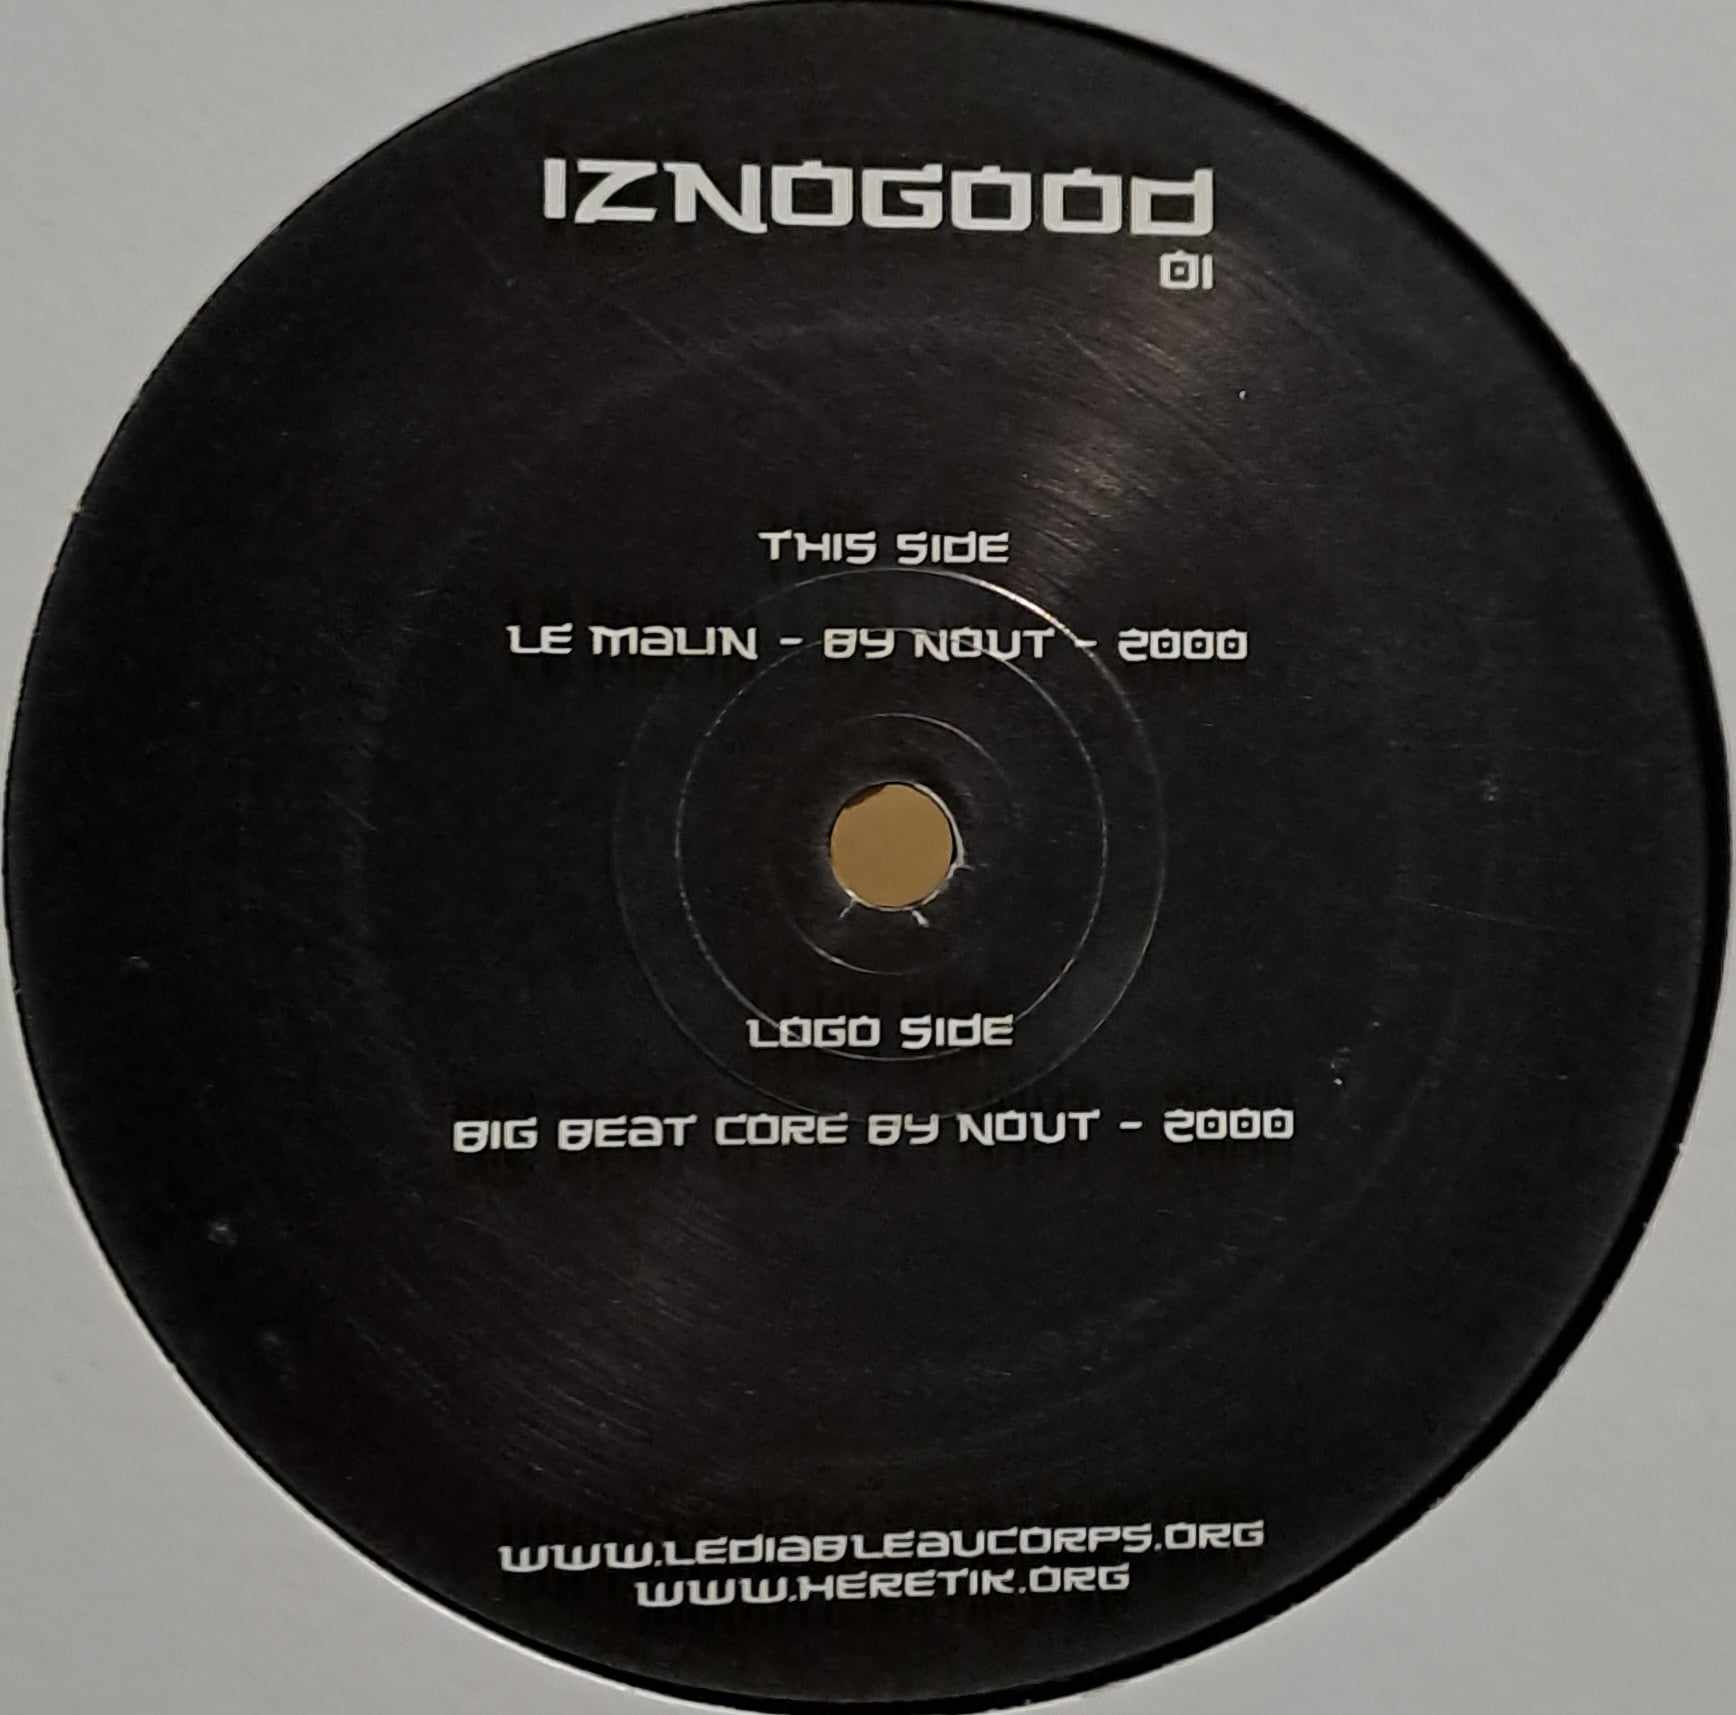 Iznogood 01 - vinyle hardcore